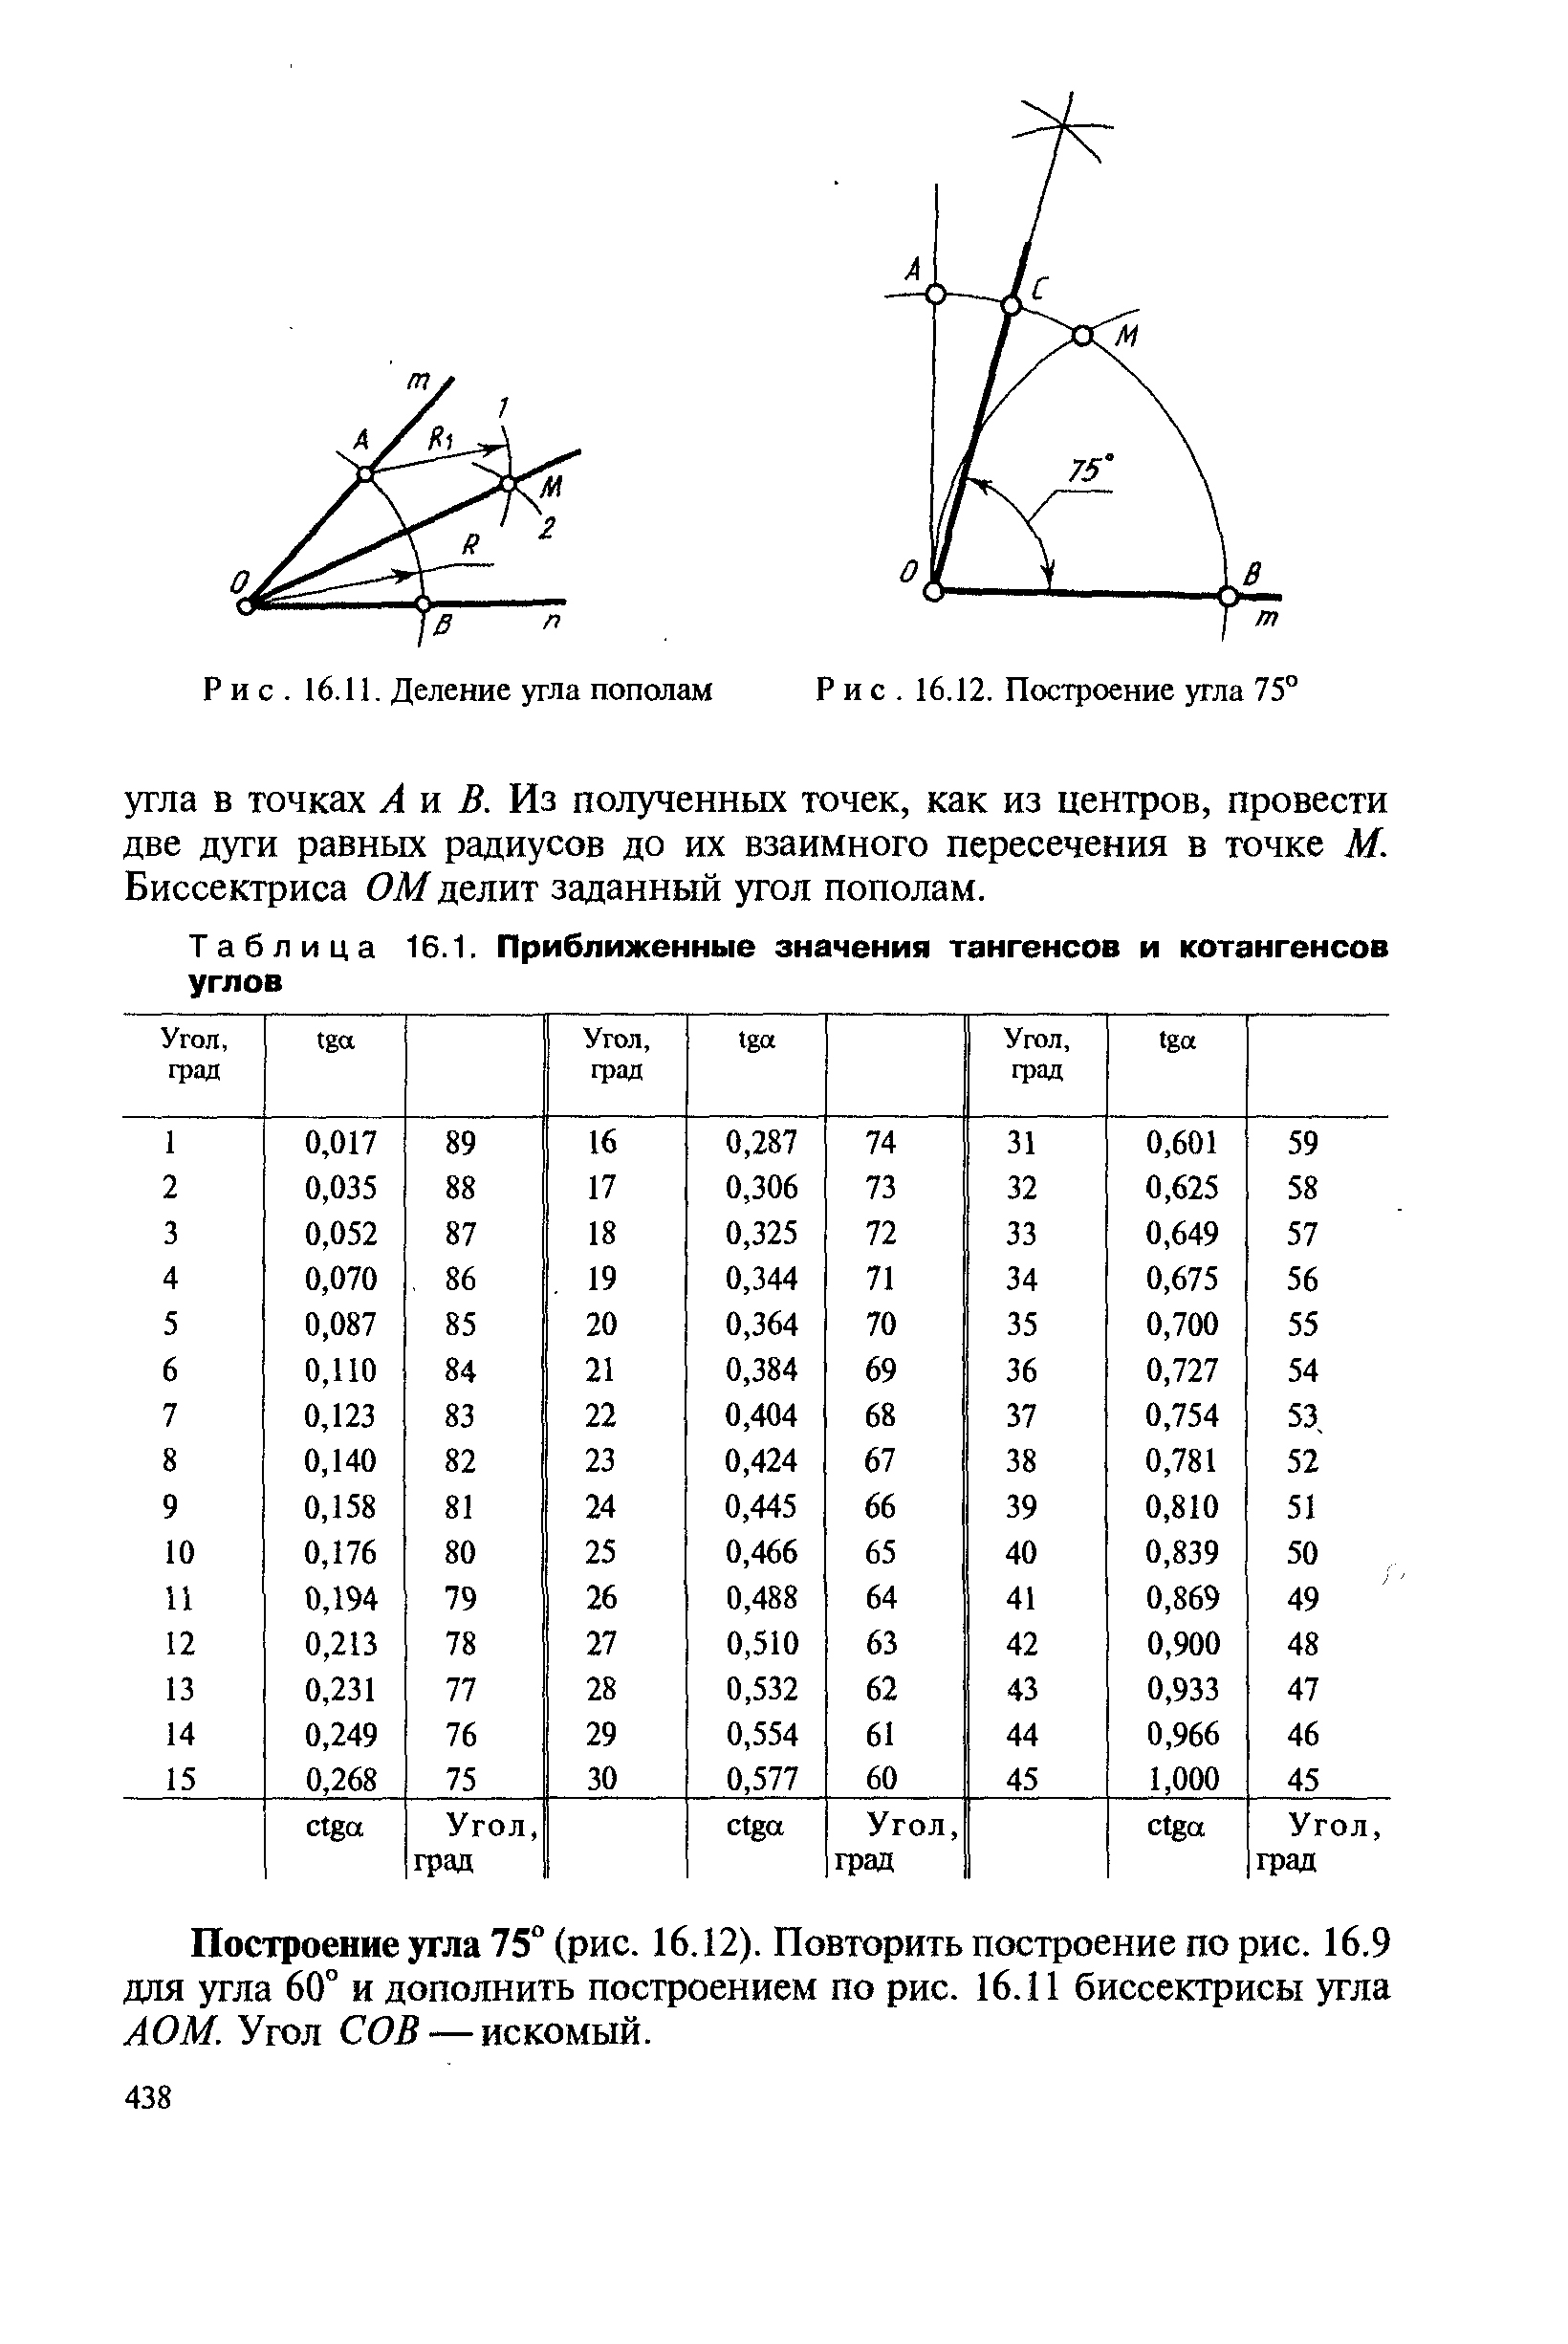 Таблица 16.1. Приближенные значения тангенсов и котангенсов углов
